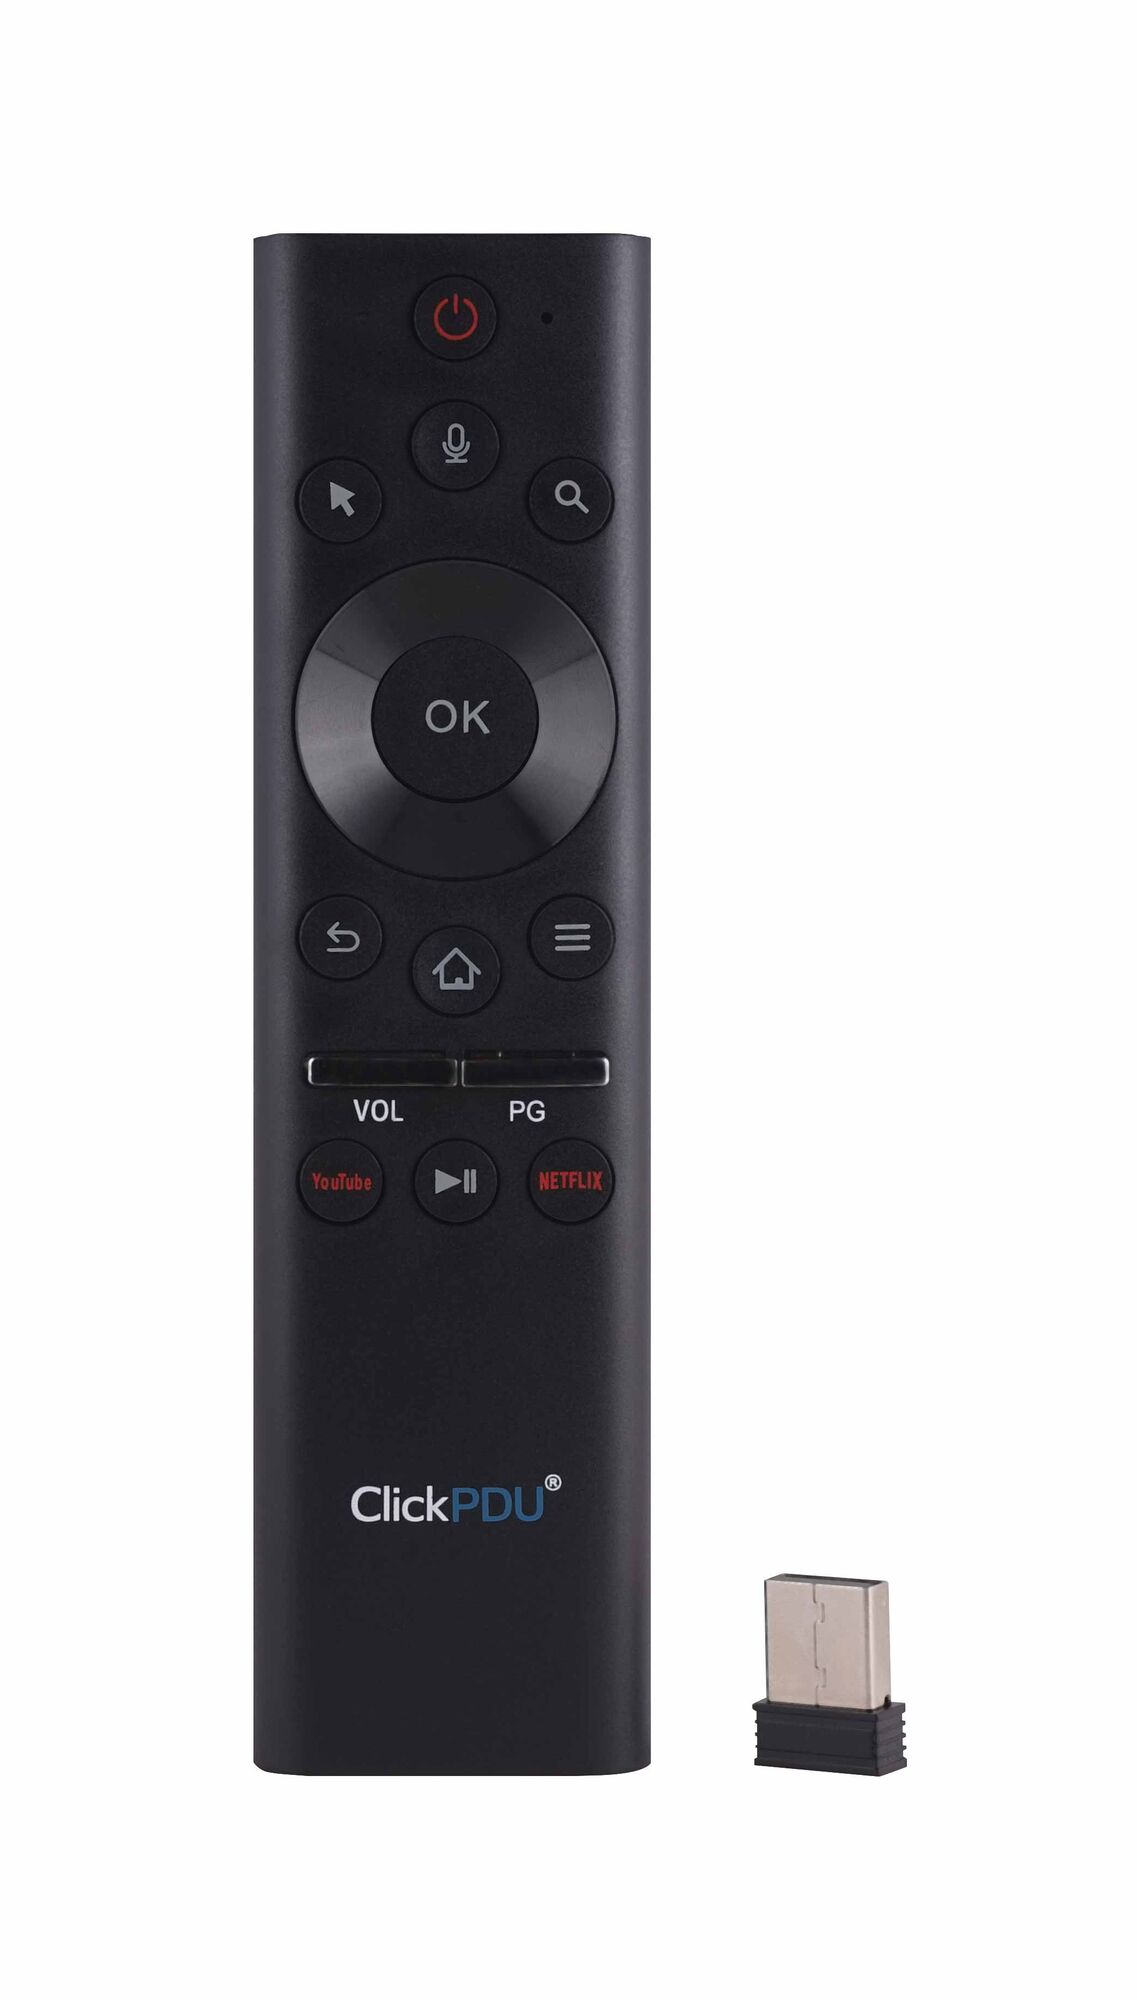 Пульт ДУ универсальный ClickPDU CRC2121B 2.4GHz Air Mouse с гироскопом и голосовым управлением для Android TV Box, PC